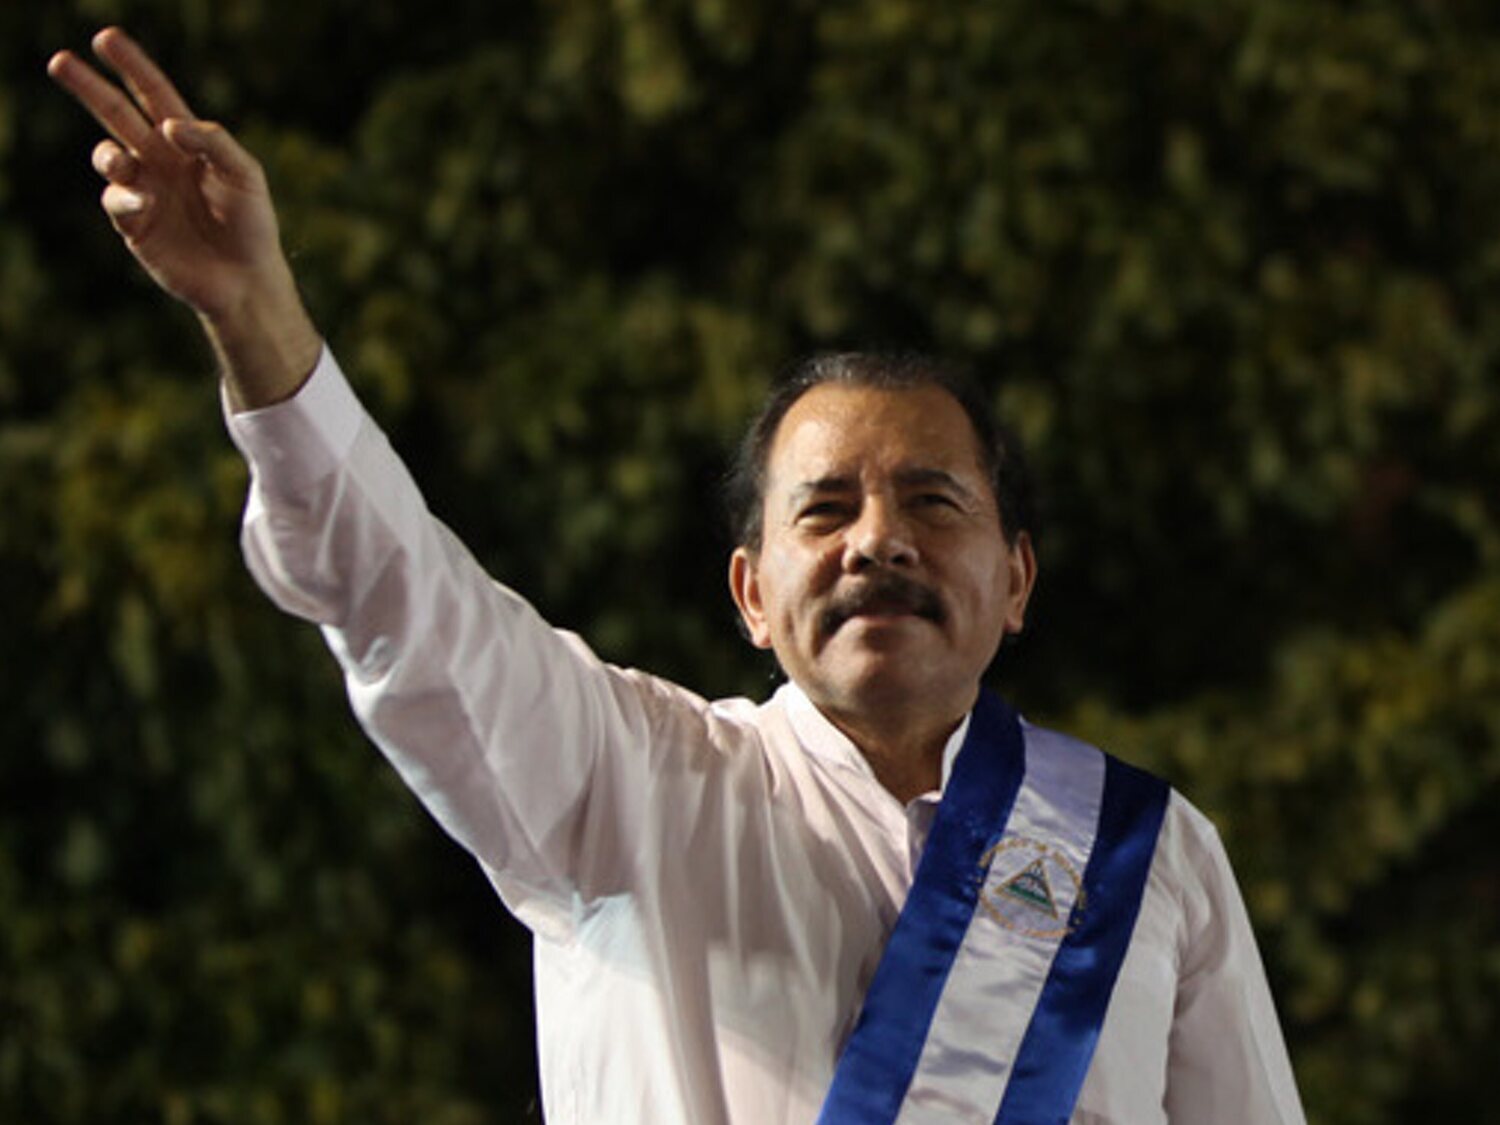 Daniel Ortega imita el acento español y se ríe de los 317 opositores desterrados: "Deben hablar como ellos"